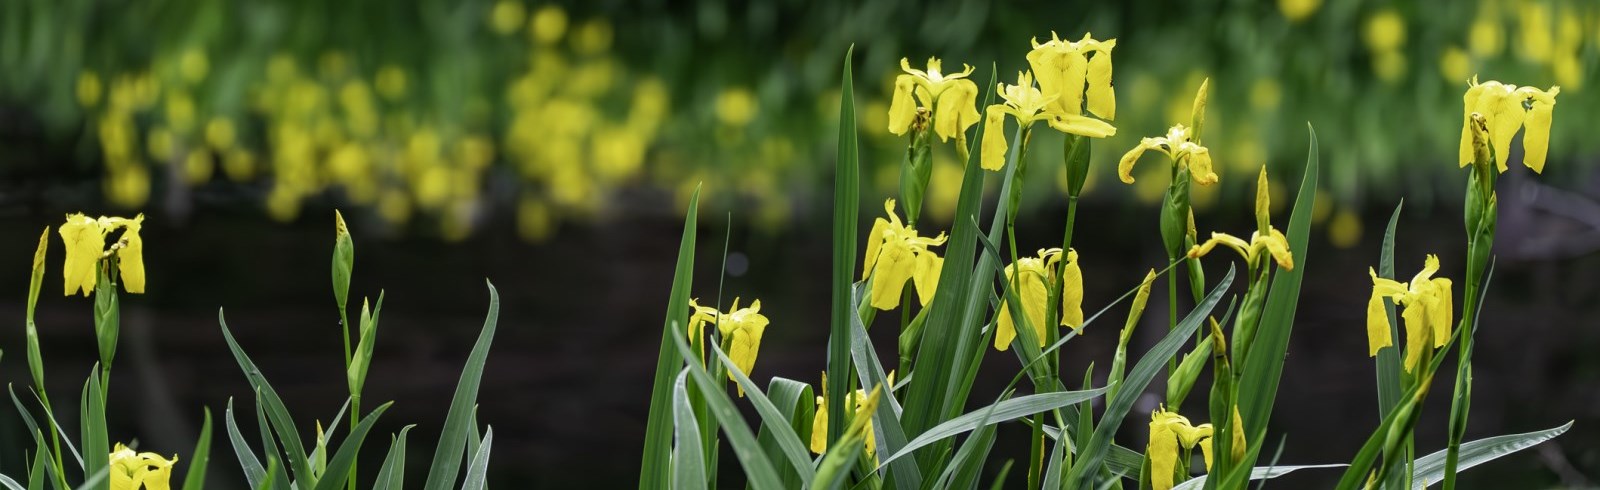 Yellow Iris stock photo